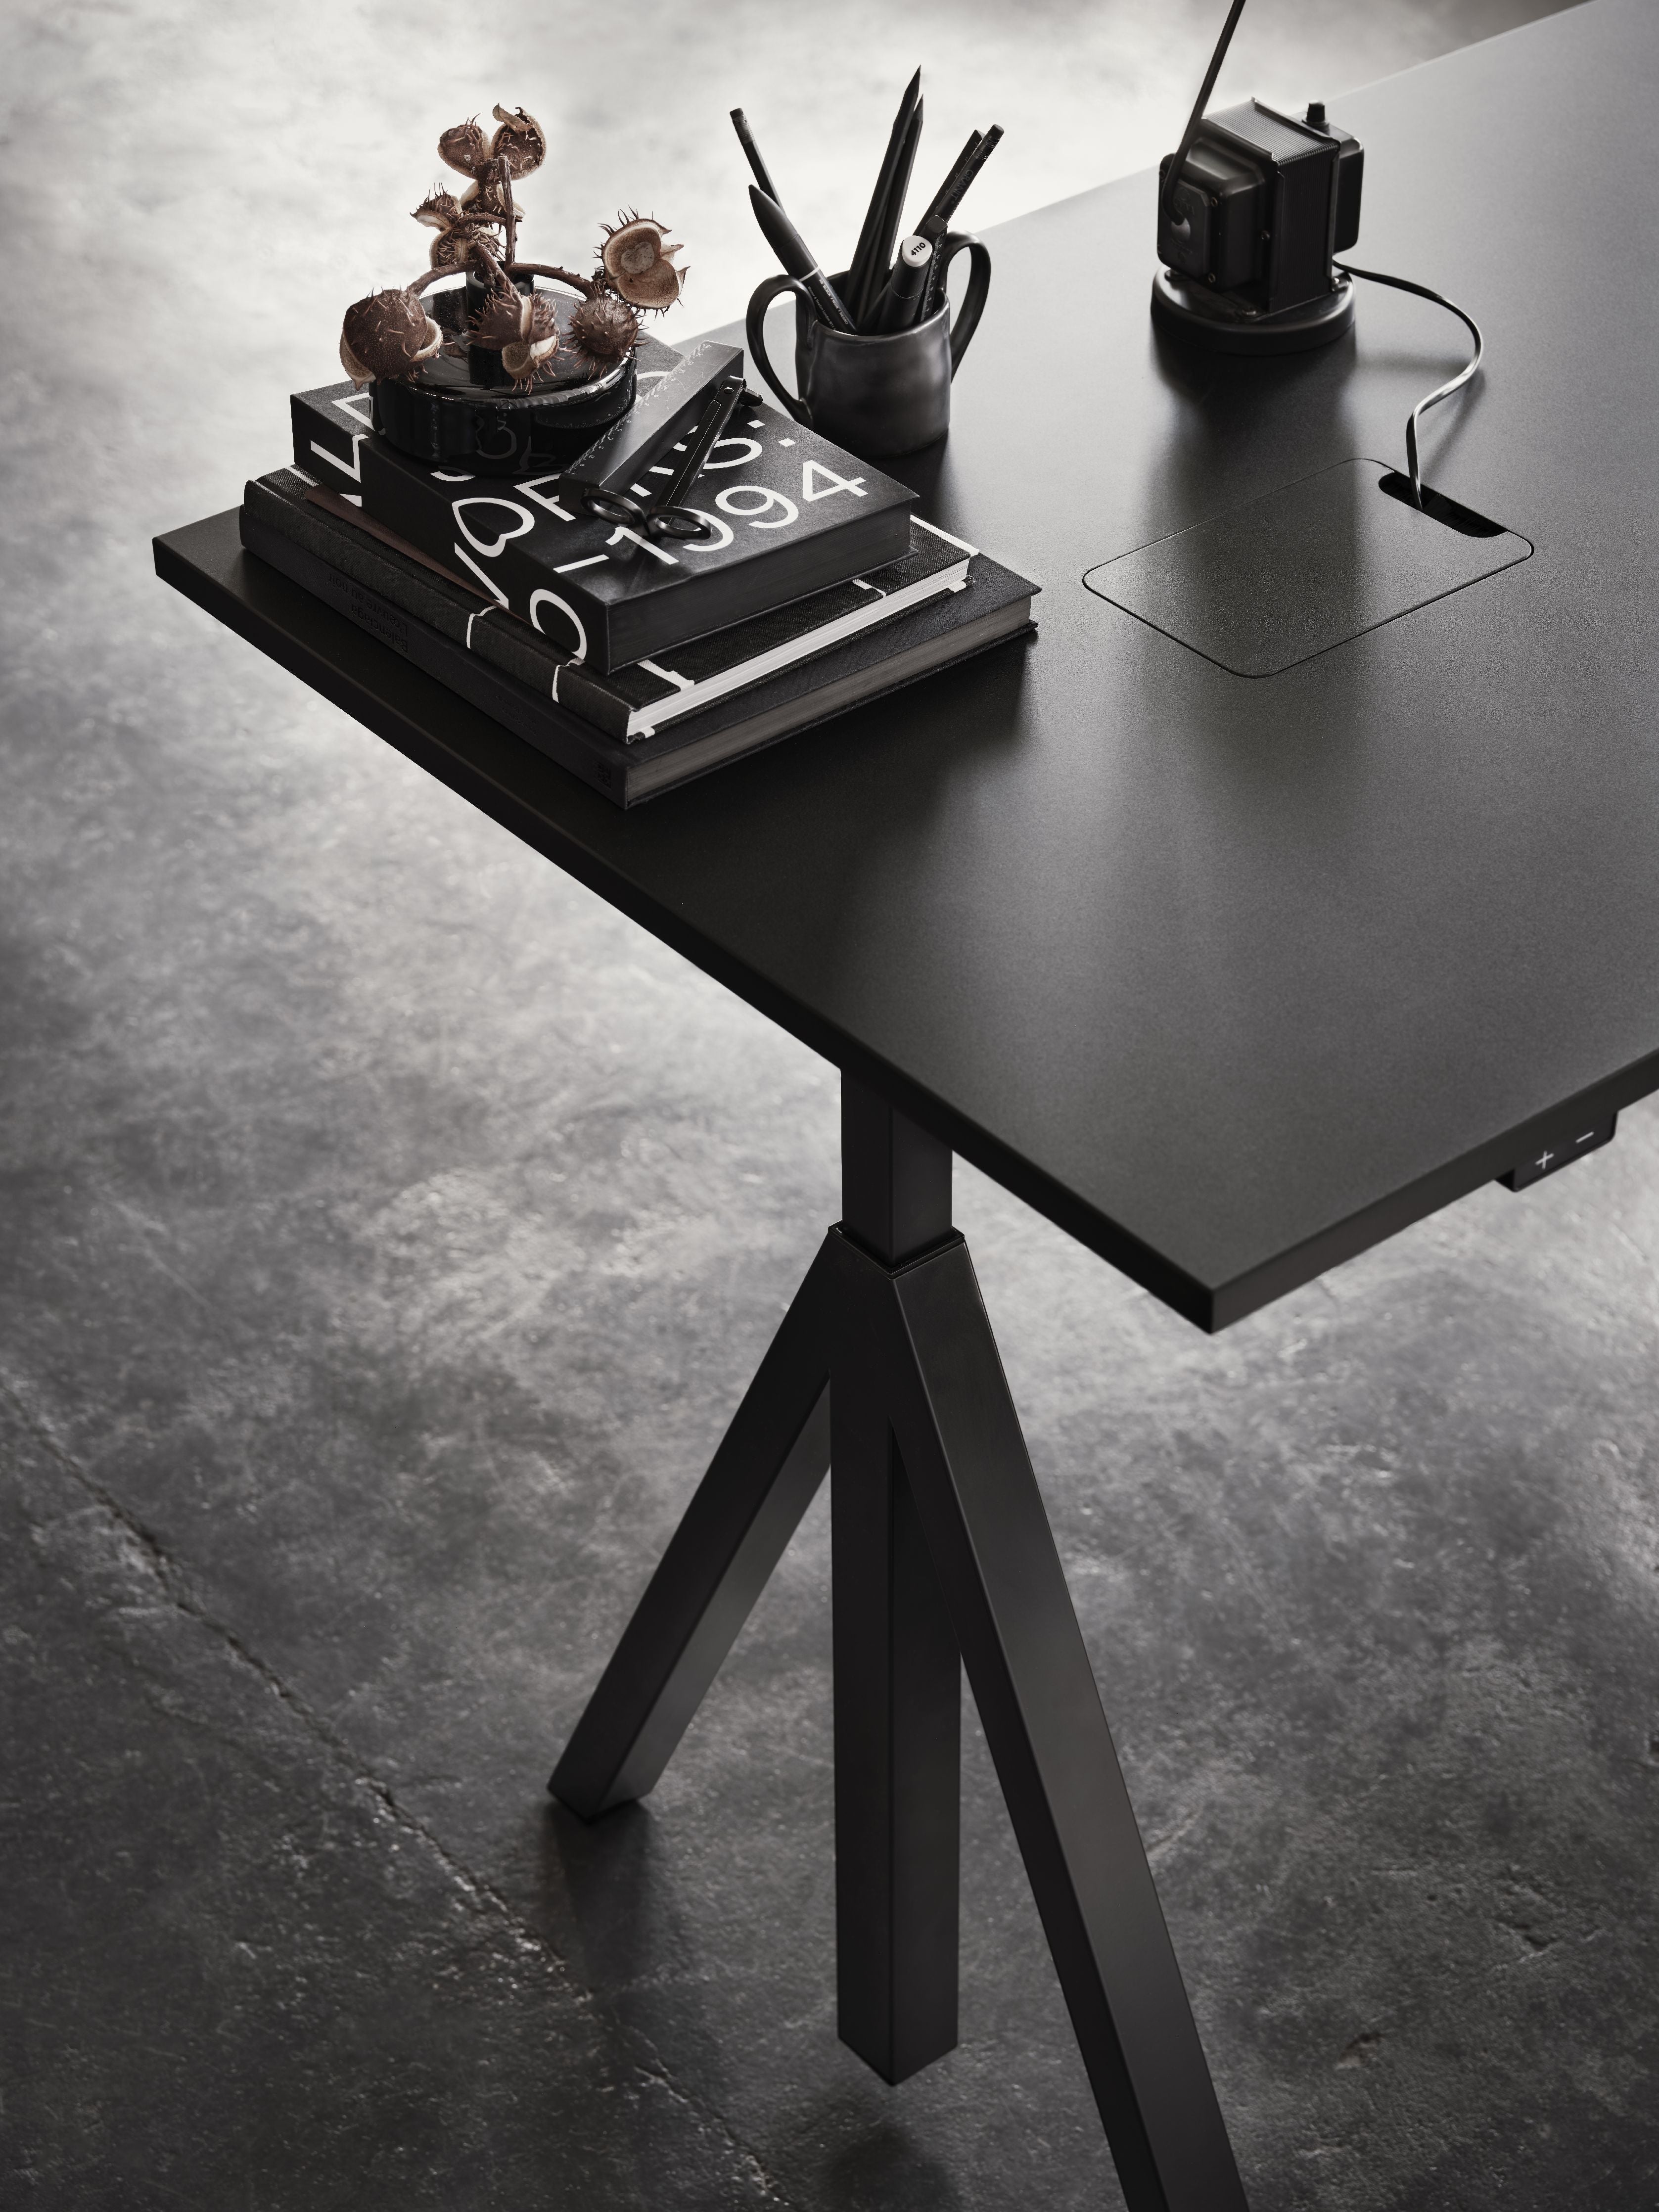 String Furniture Fungerar höjd justerbar möte tabell 90x180 cm, svart/svart